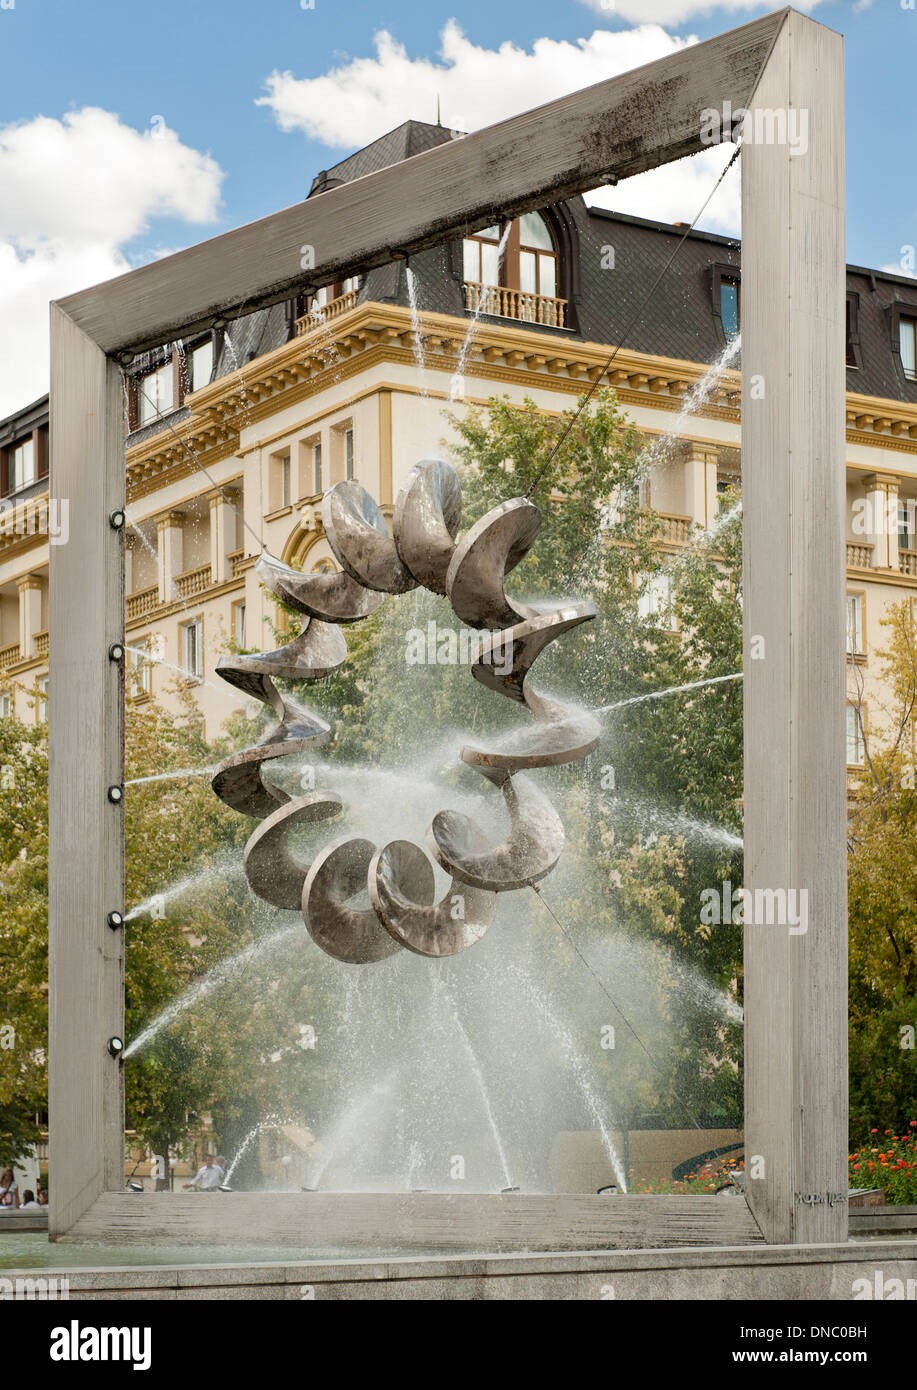 Sculpture en spirale et fontaine de la place centrale de Plovdiv, la deuxième ville de Bulgarie. Banque D'Images